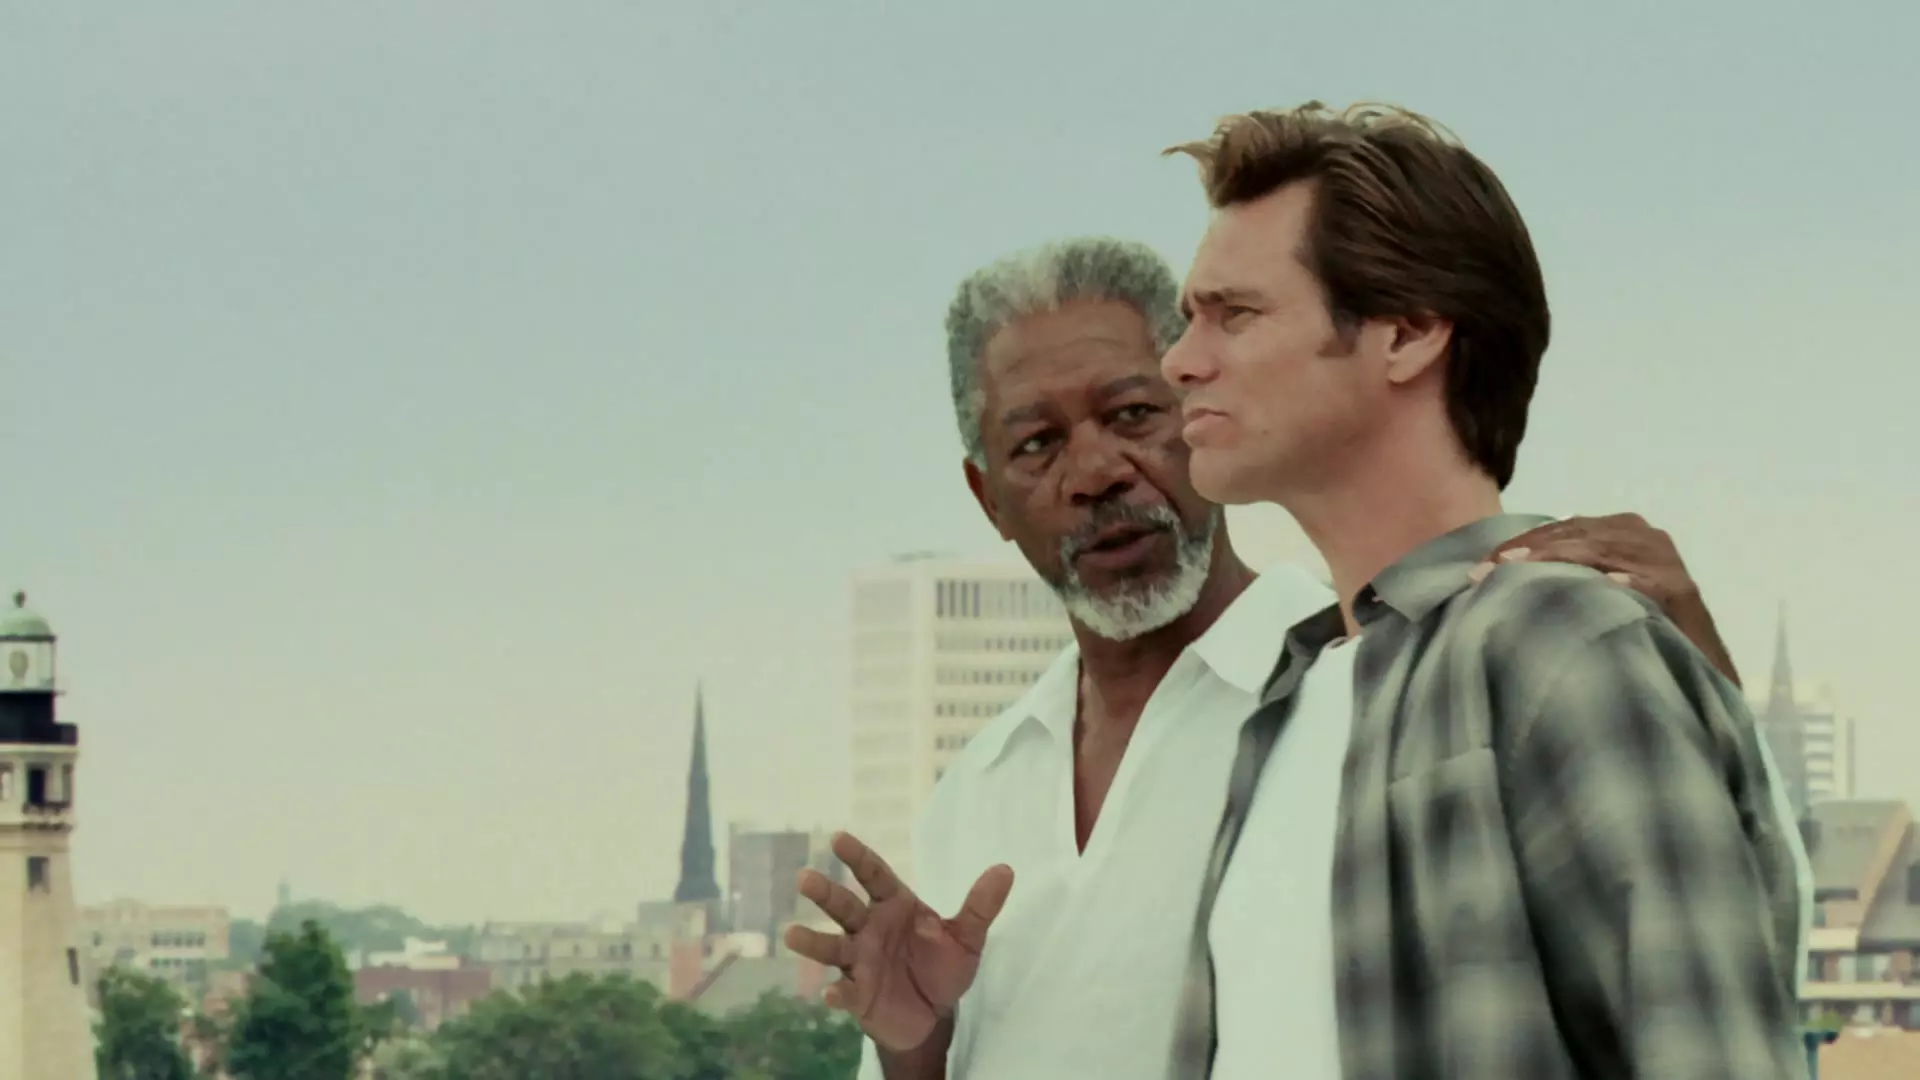 مورگان فریمن در نقش خدا در کنار جیم کری در نقش شخصیت بروس در فیلم بروس قادر مطلق